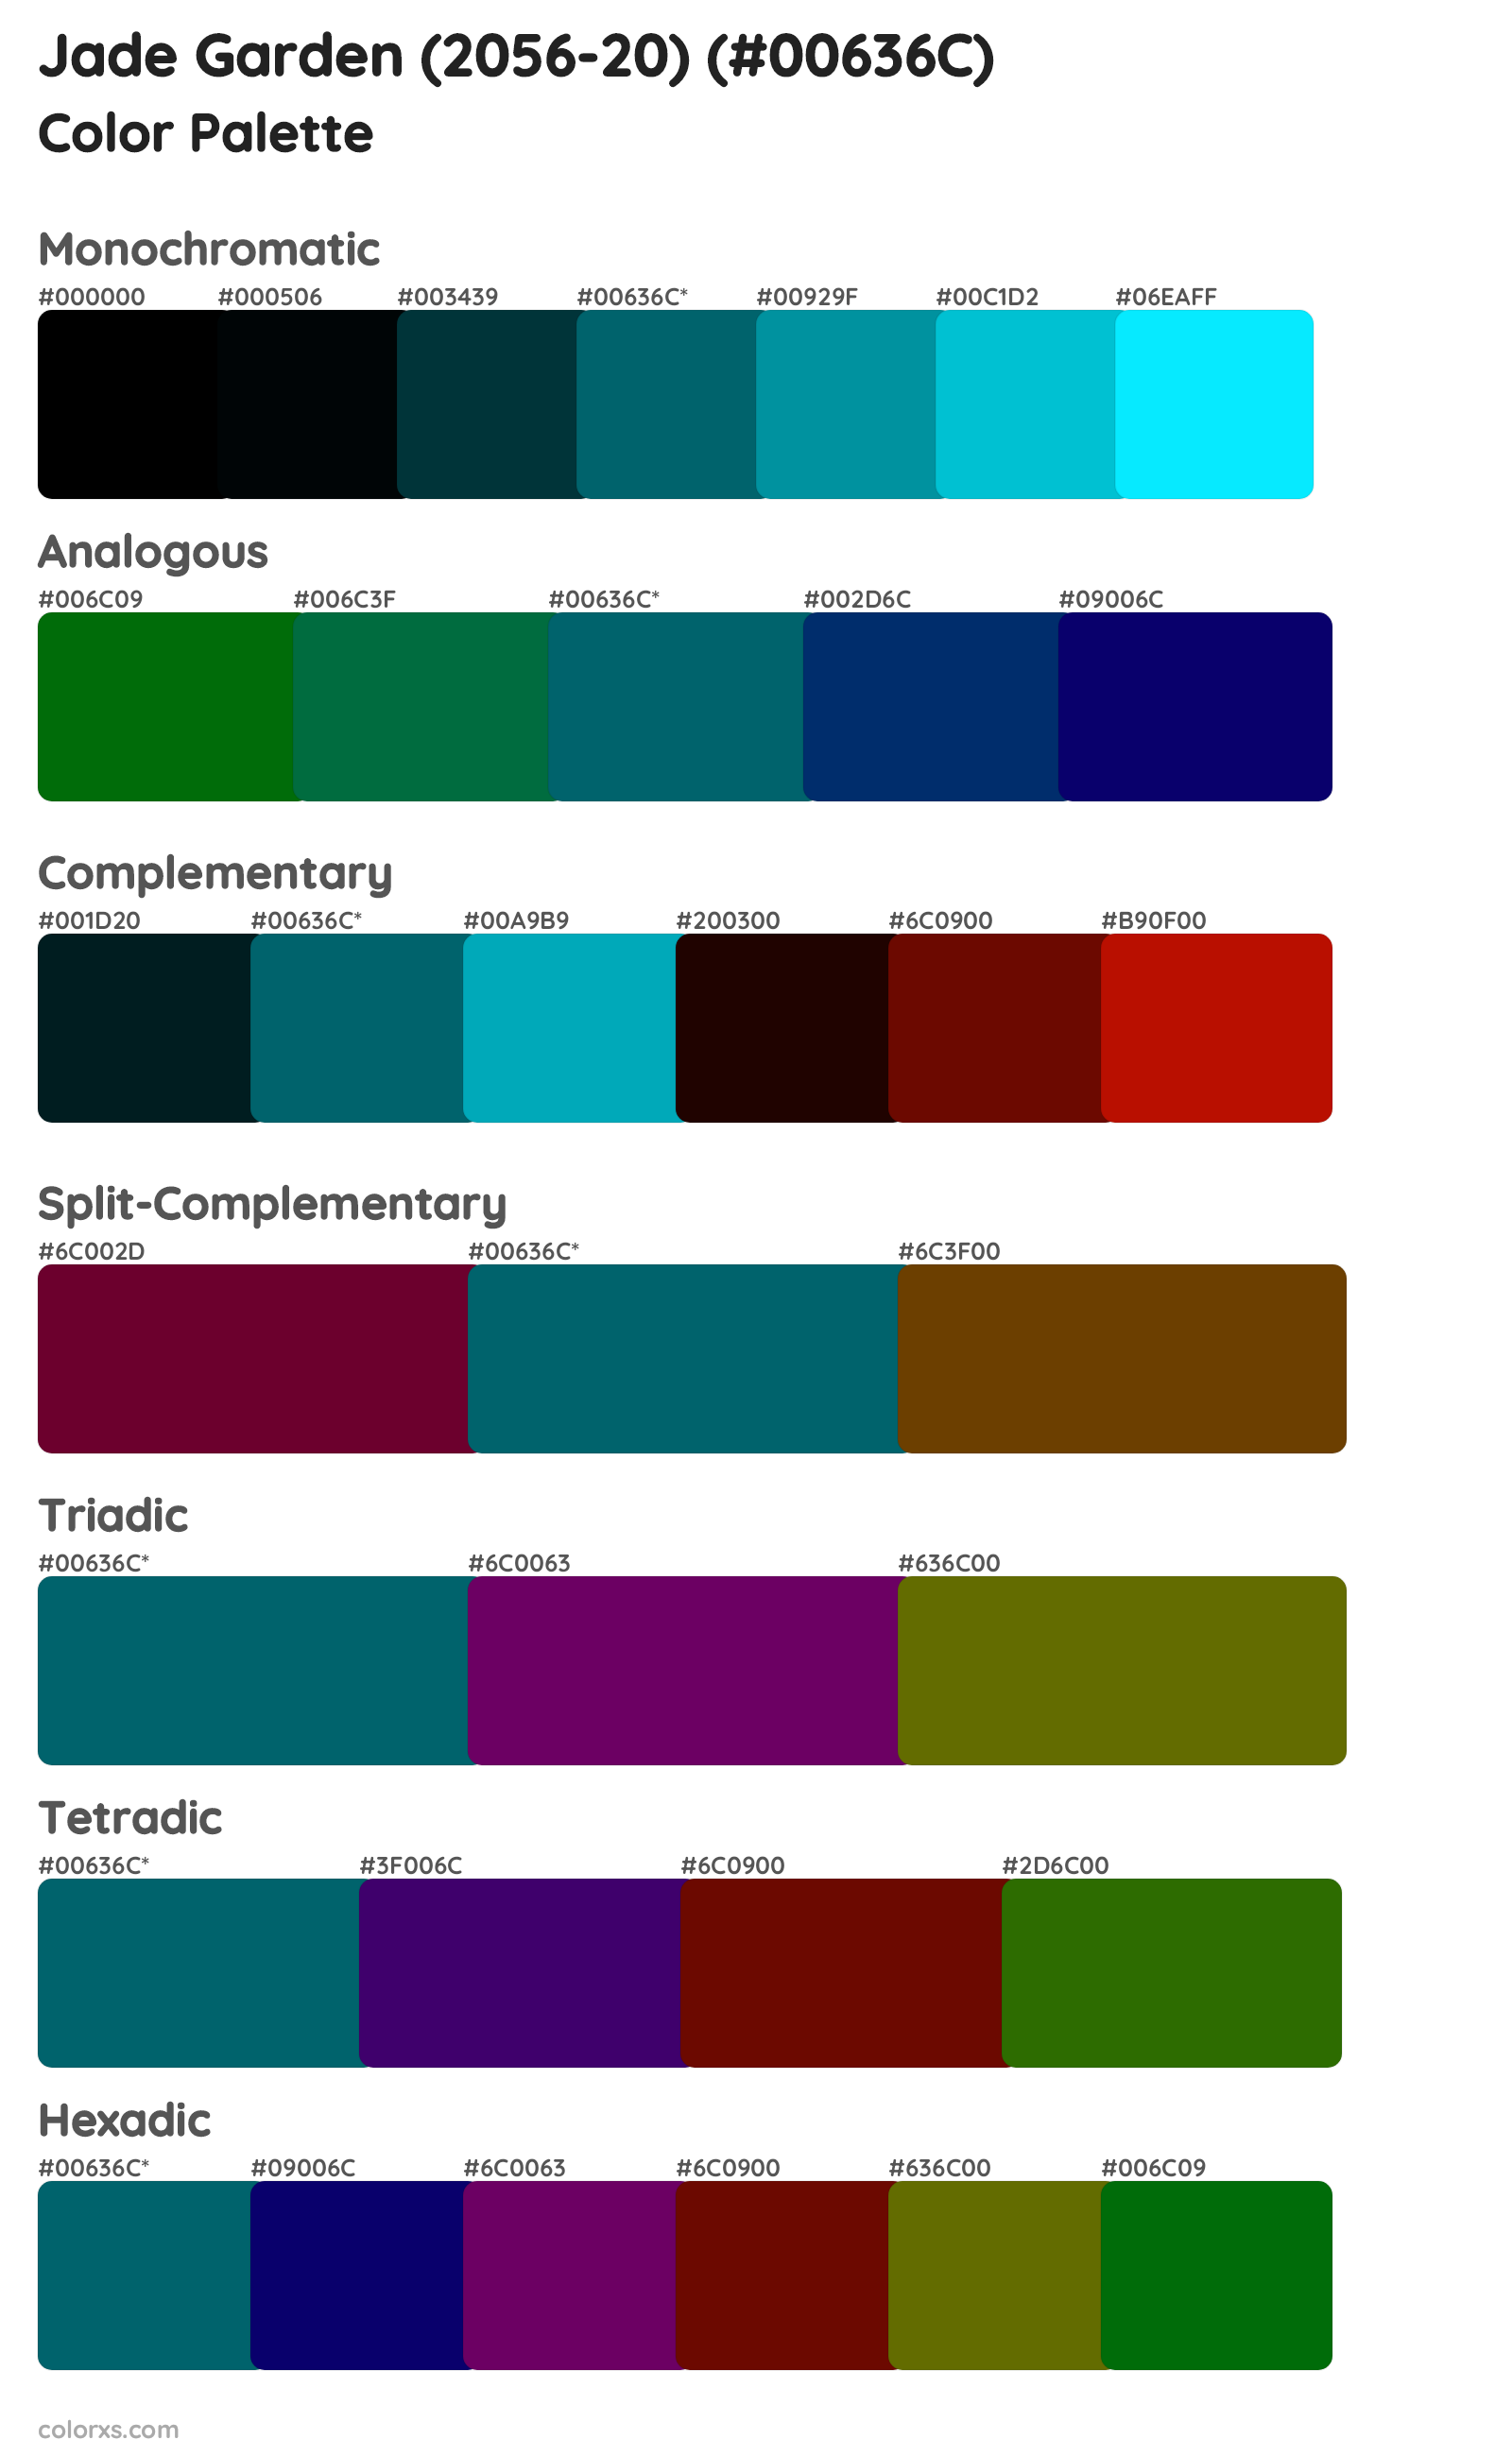 Jade Garden (2056-20) Color Scheme Palettes